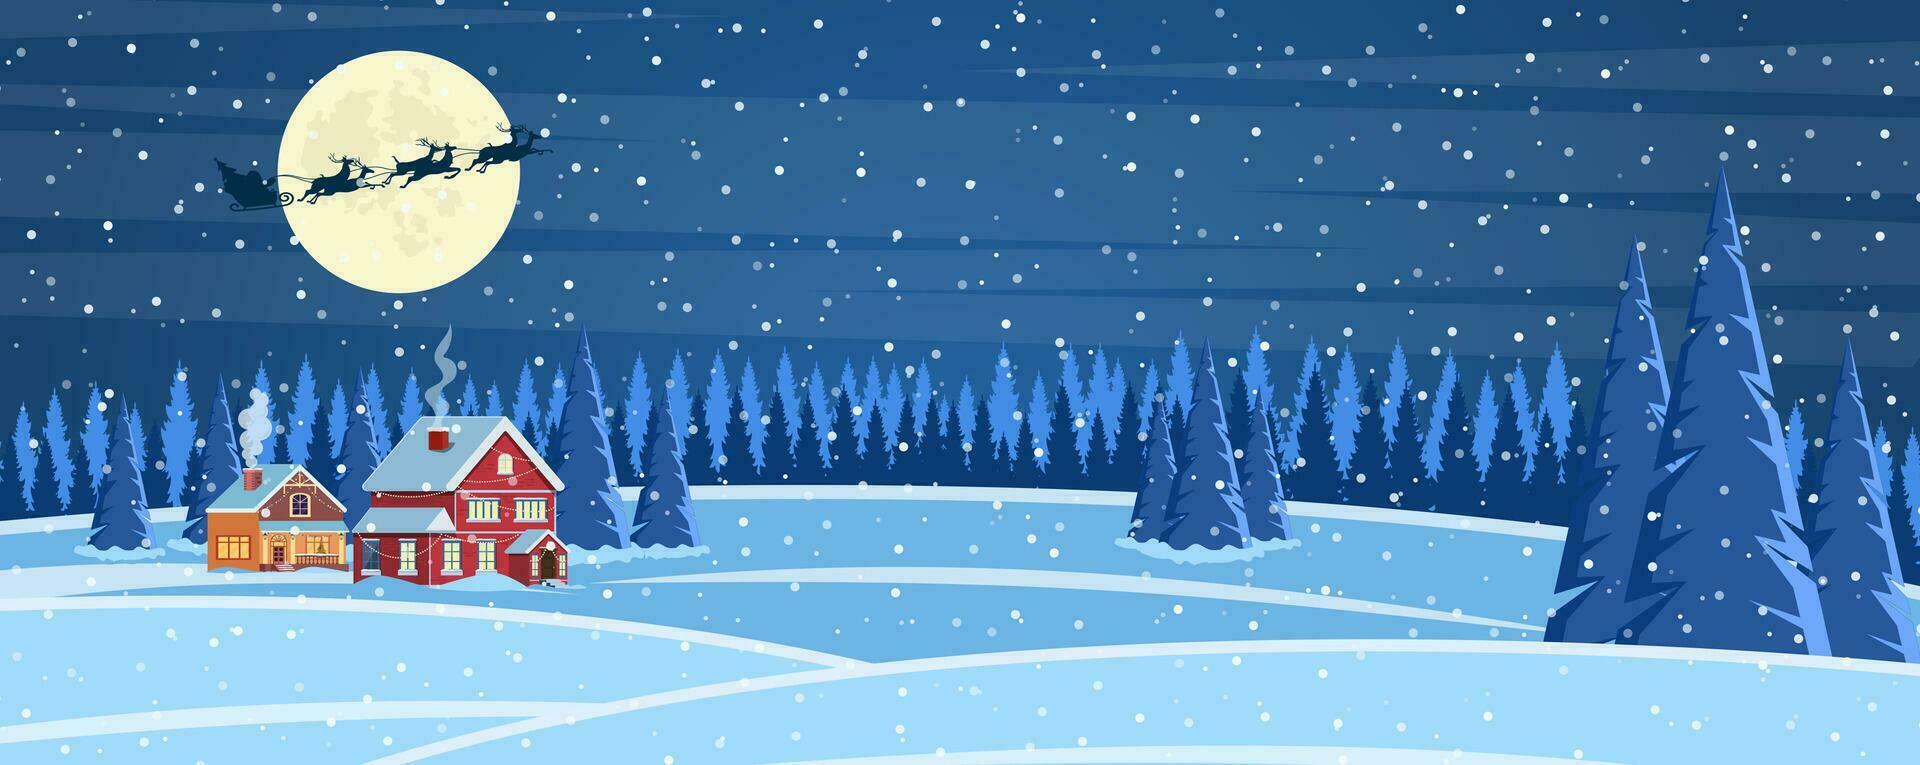 Kerstmis landschap achtergrond met sneeuw en boom. vrolijk Kerstmis vakantie. nieuw jaar en Kerstmis viering. vector illustratie in vlak stijl